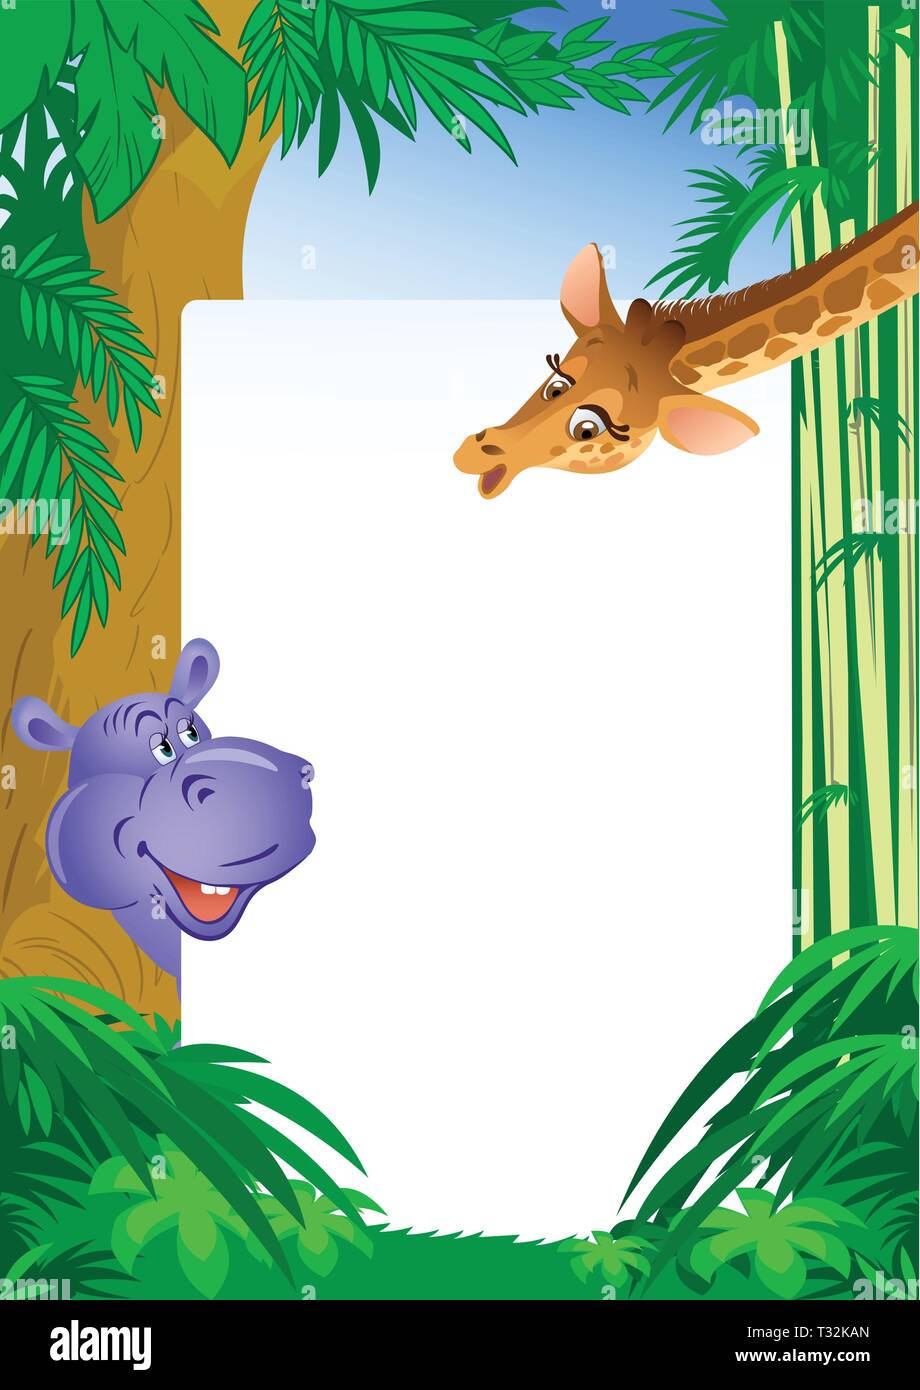 L'illustration montre un hippopotame et girafe sur fond blanc pour le texte et jungle. Réalisé dans un style cartoon, sur des calques distincts. Illustration de Vecteur